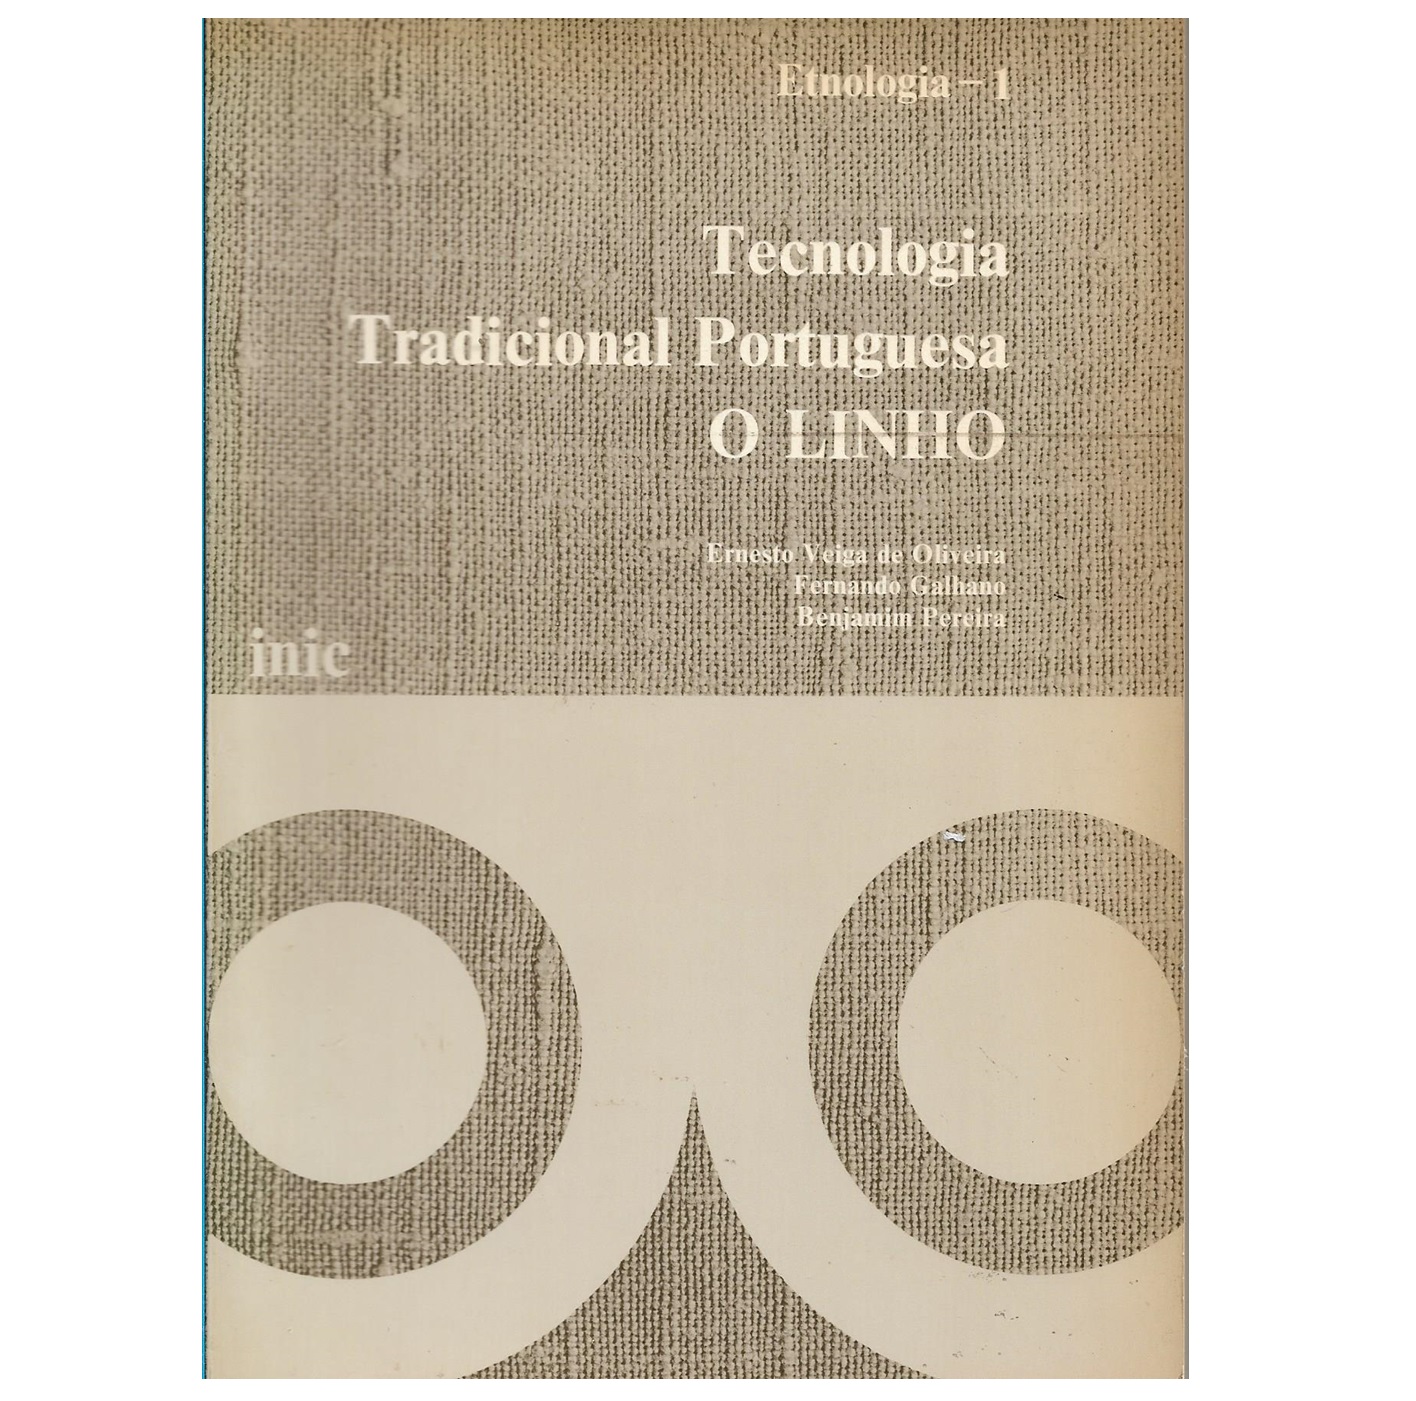 TECNOLOGIA TRADICIONAL PORTUGUESA: O LINHO